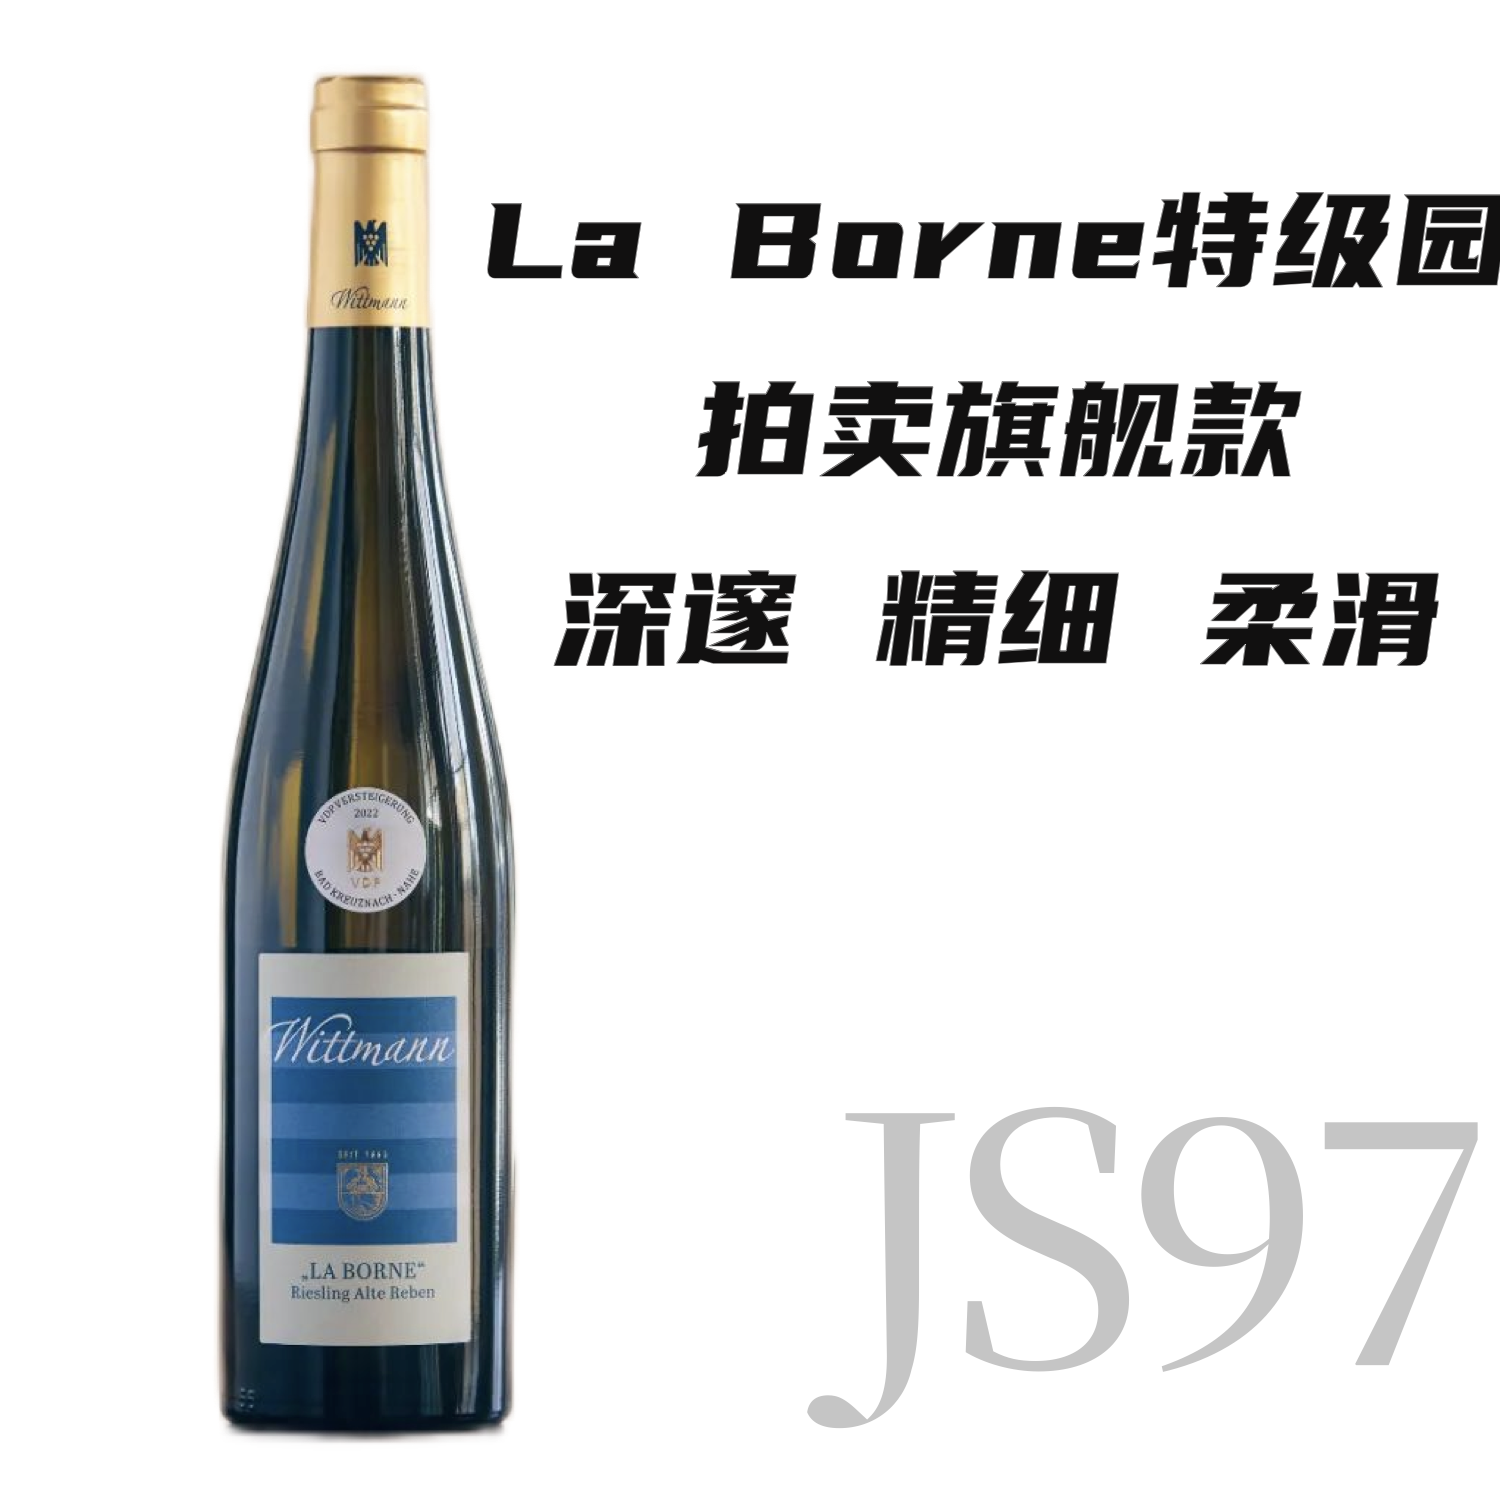 【仅2支·JS97老藤旗舰拍卖款】2021 维特曼酒庄拉博恩特级园老藤雷司令干白